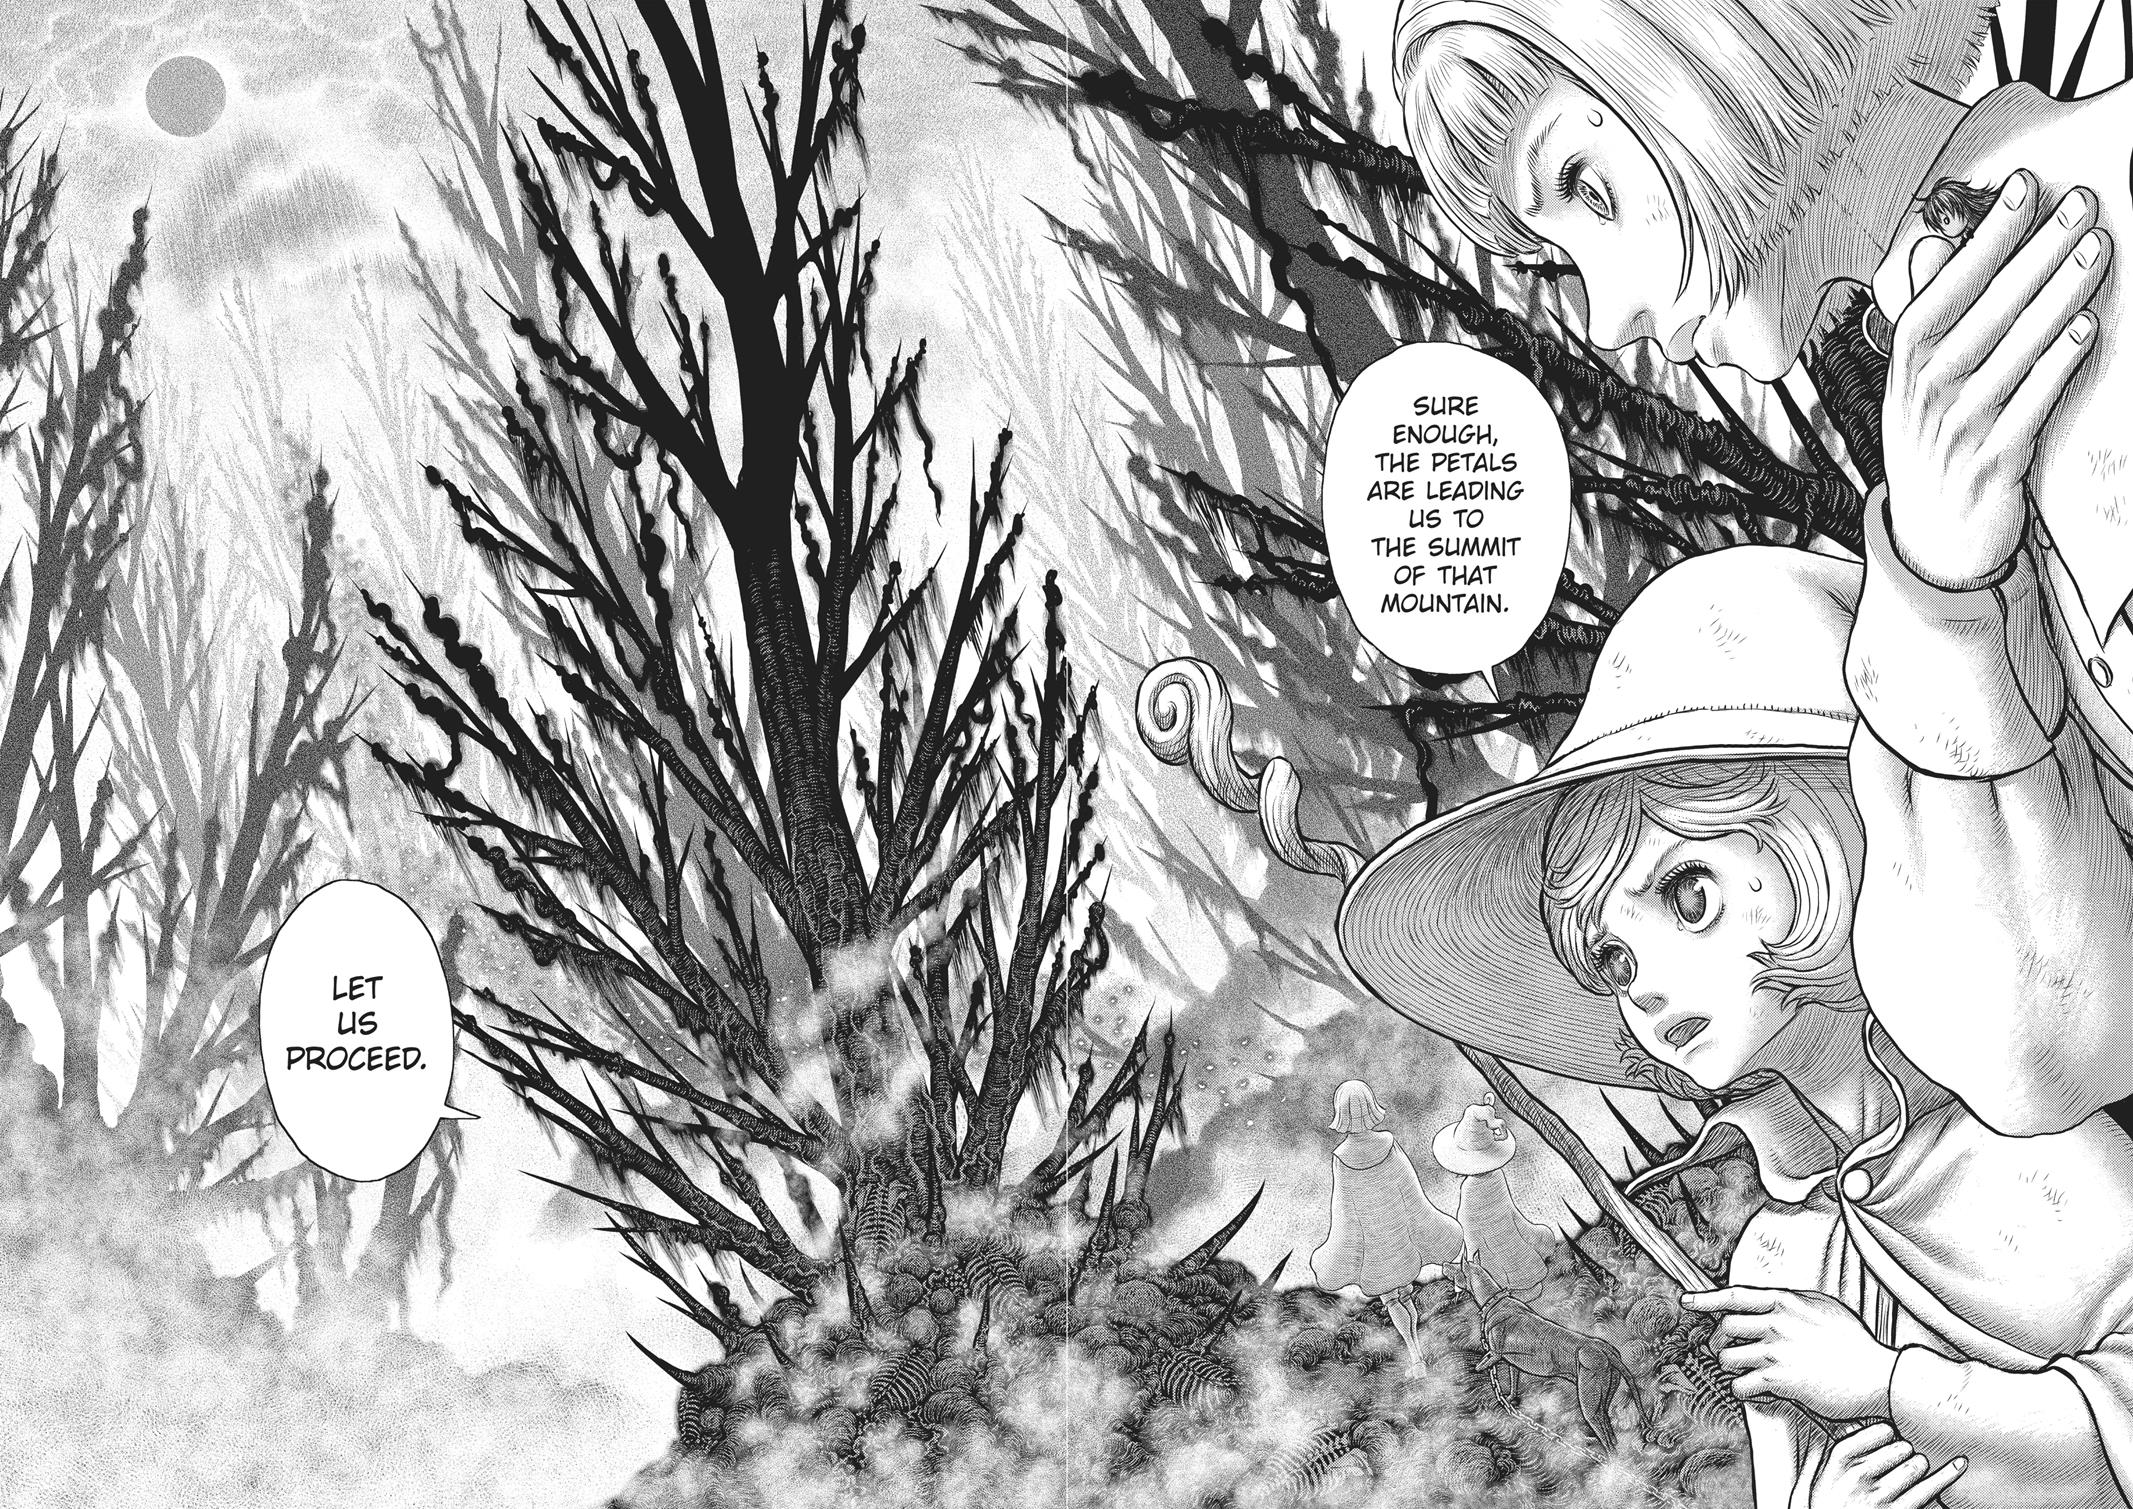 Berserk Manga Chapter 351 image 13